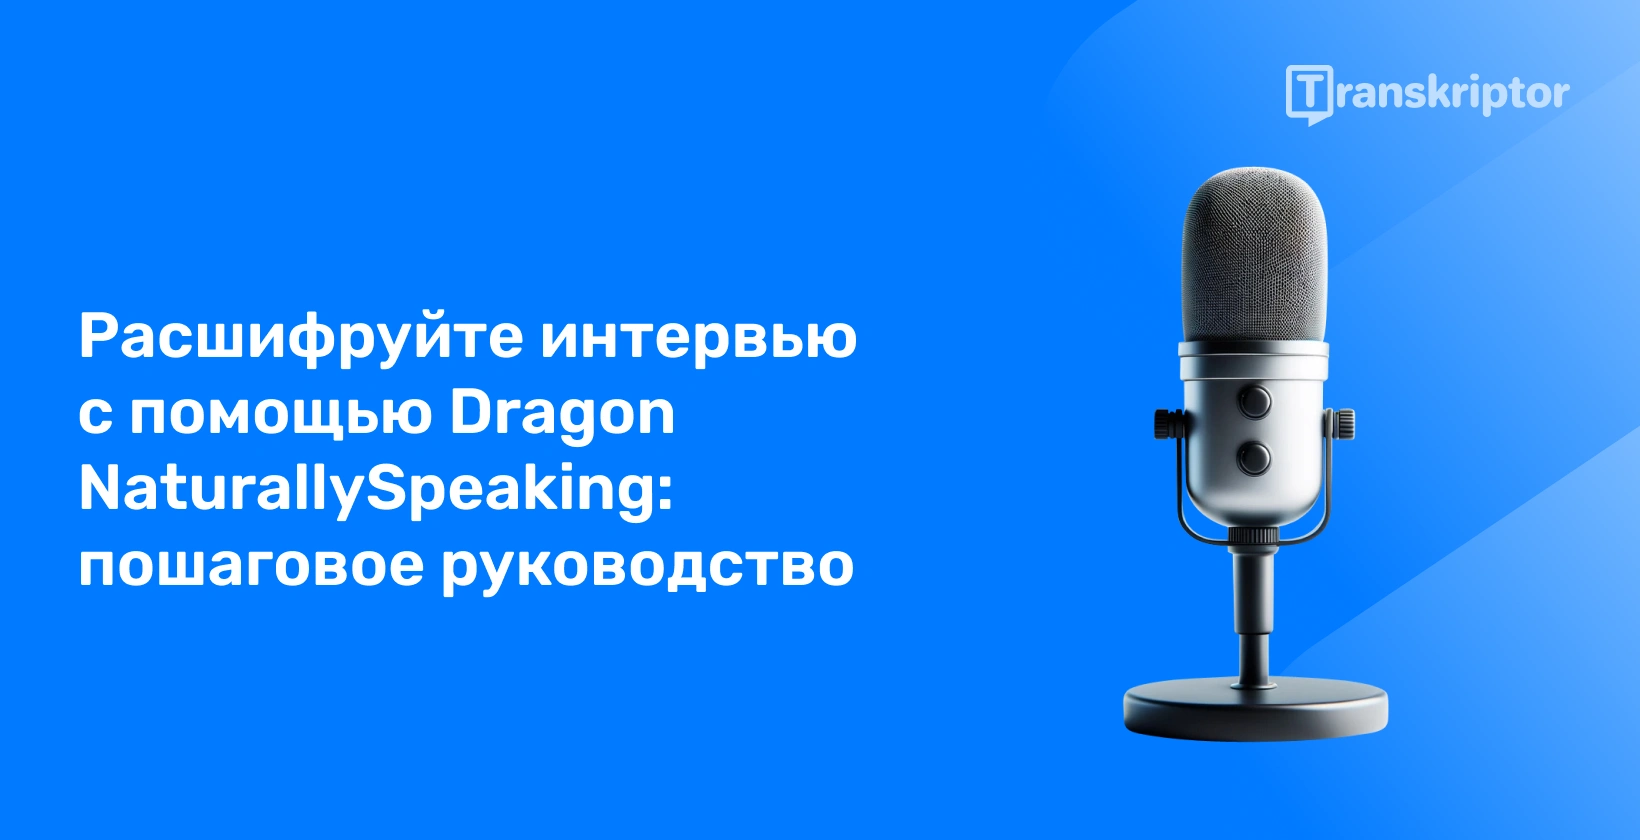 Микрофон, представляющий роль Dragon NaturallySpeaking в расшифровке интервью, с акцентом на управляемый подход.